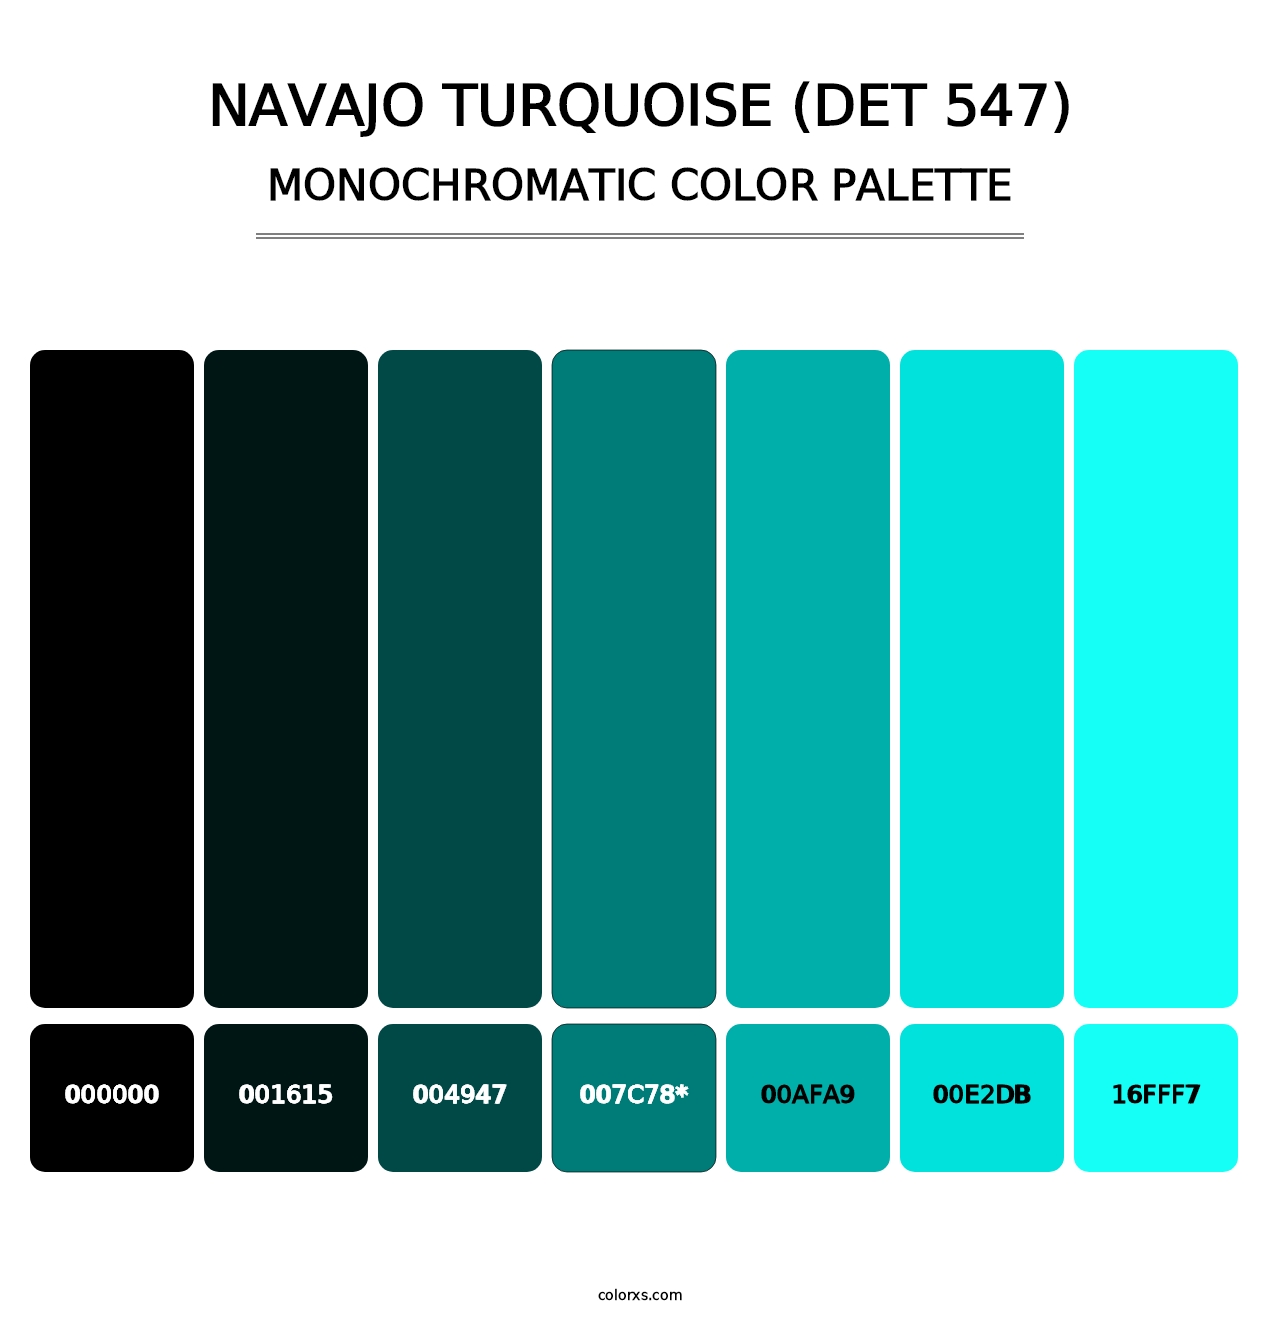 Navajo Turquoise (DET 547) - Monochromatic Color Palette